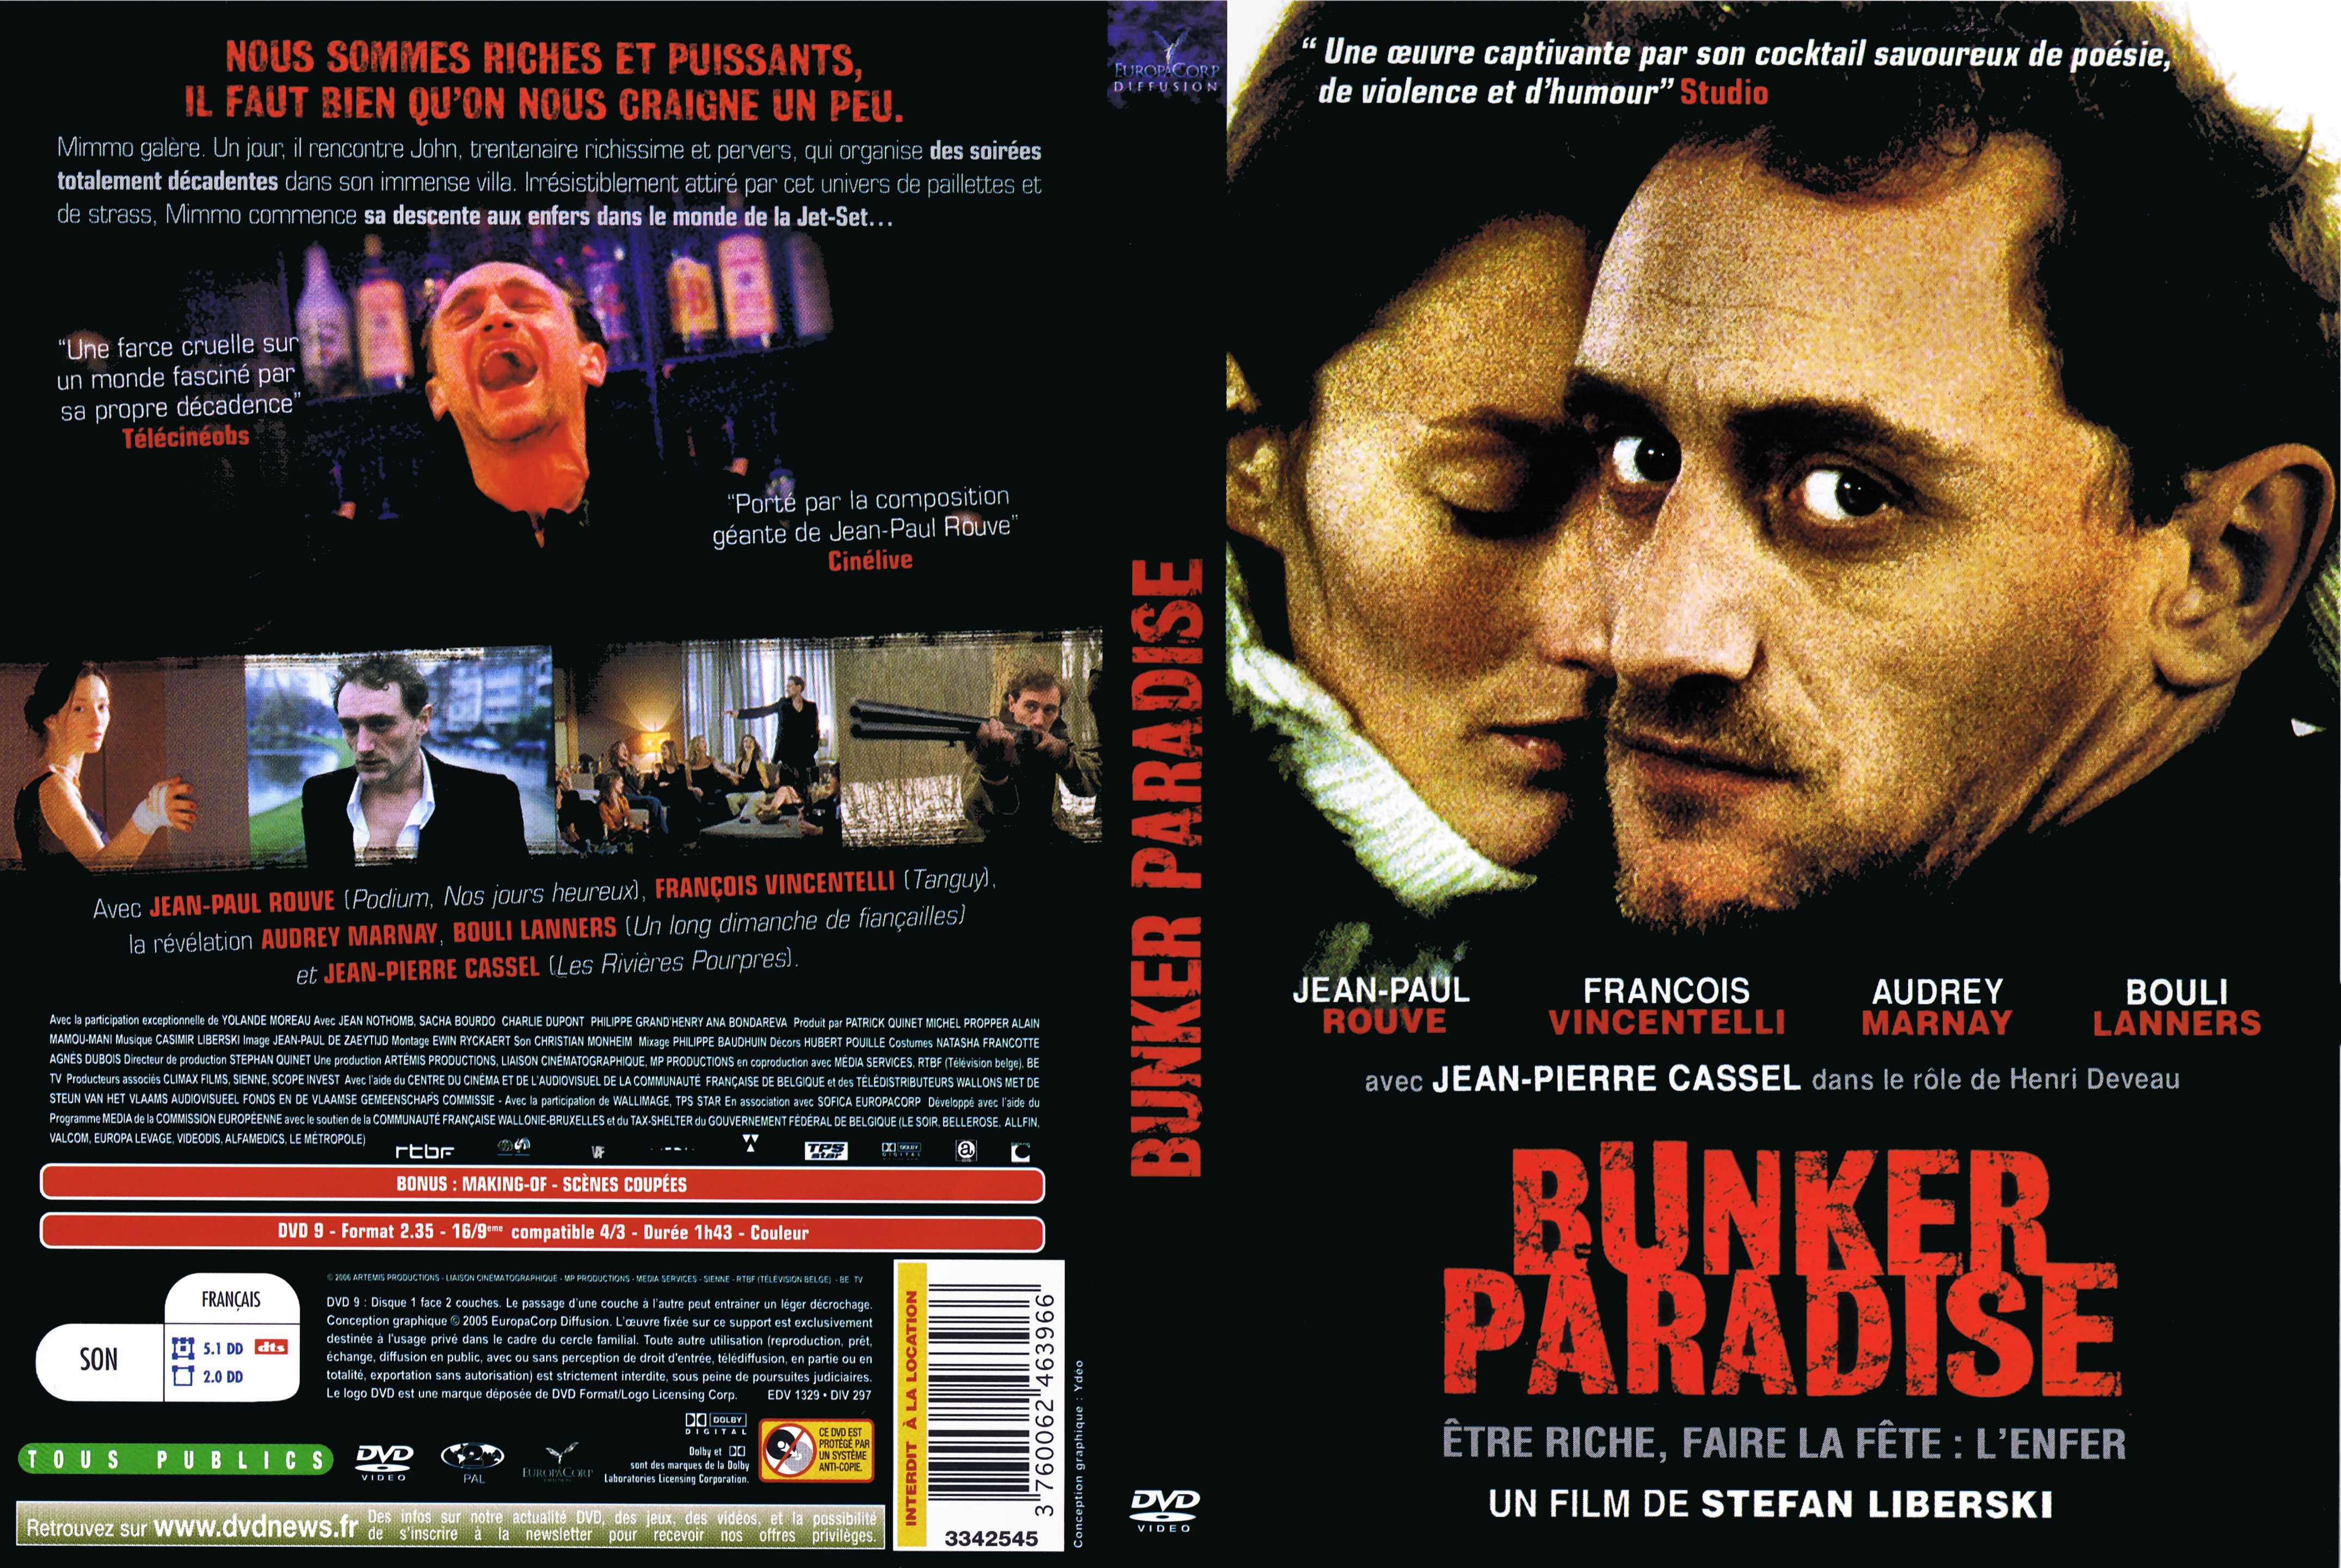 Jaquette DVD Bunker paradise